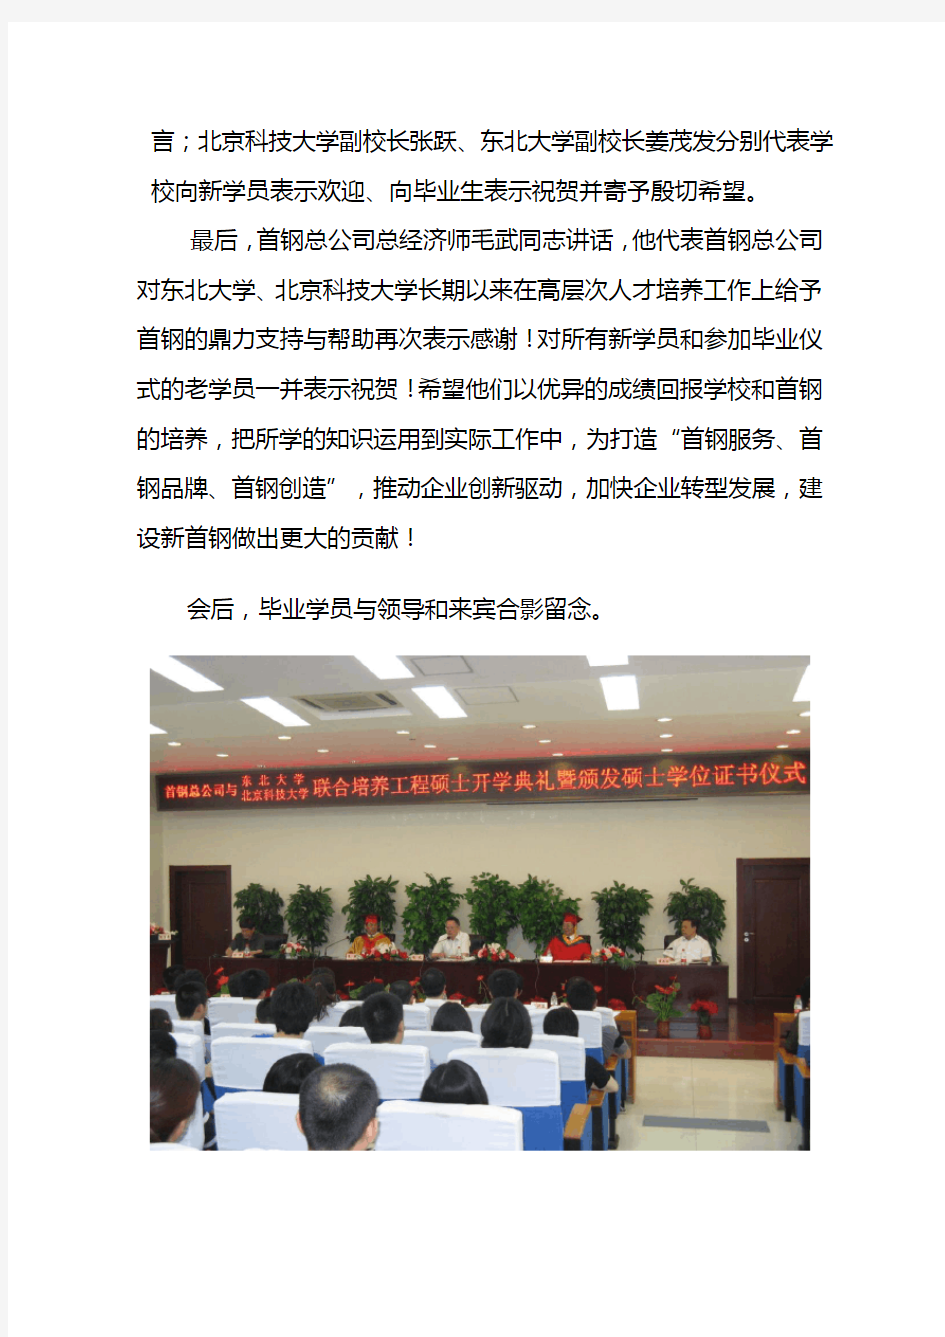 首钢总公司与东北大学、北京科技大学联合培养